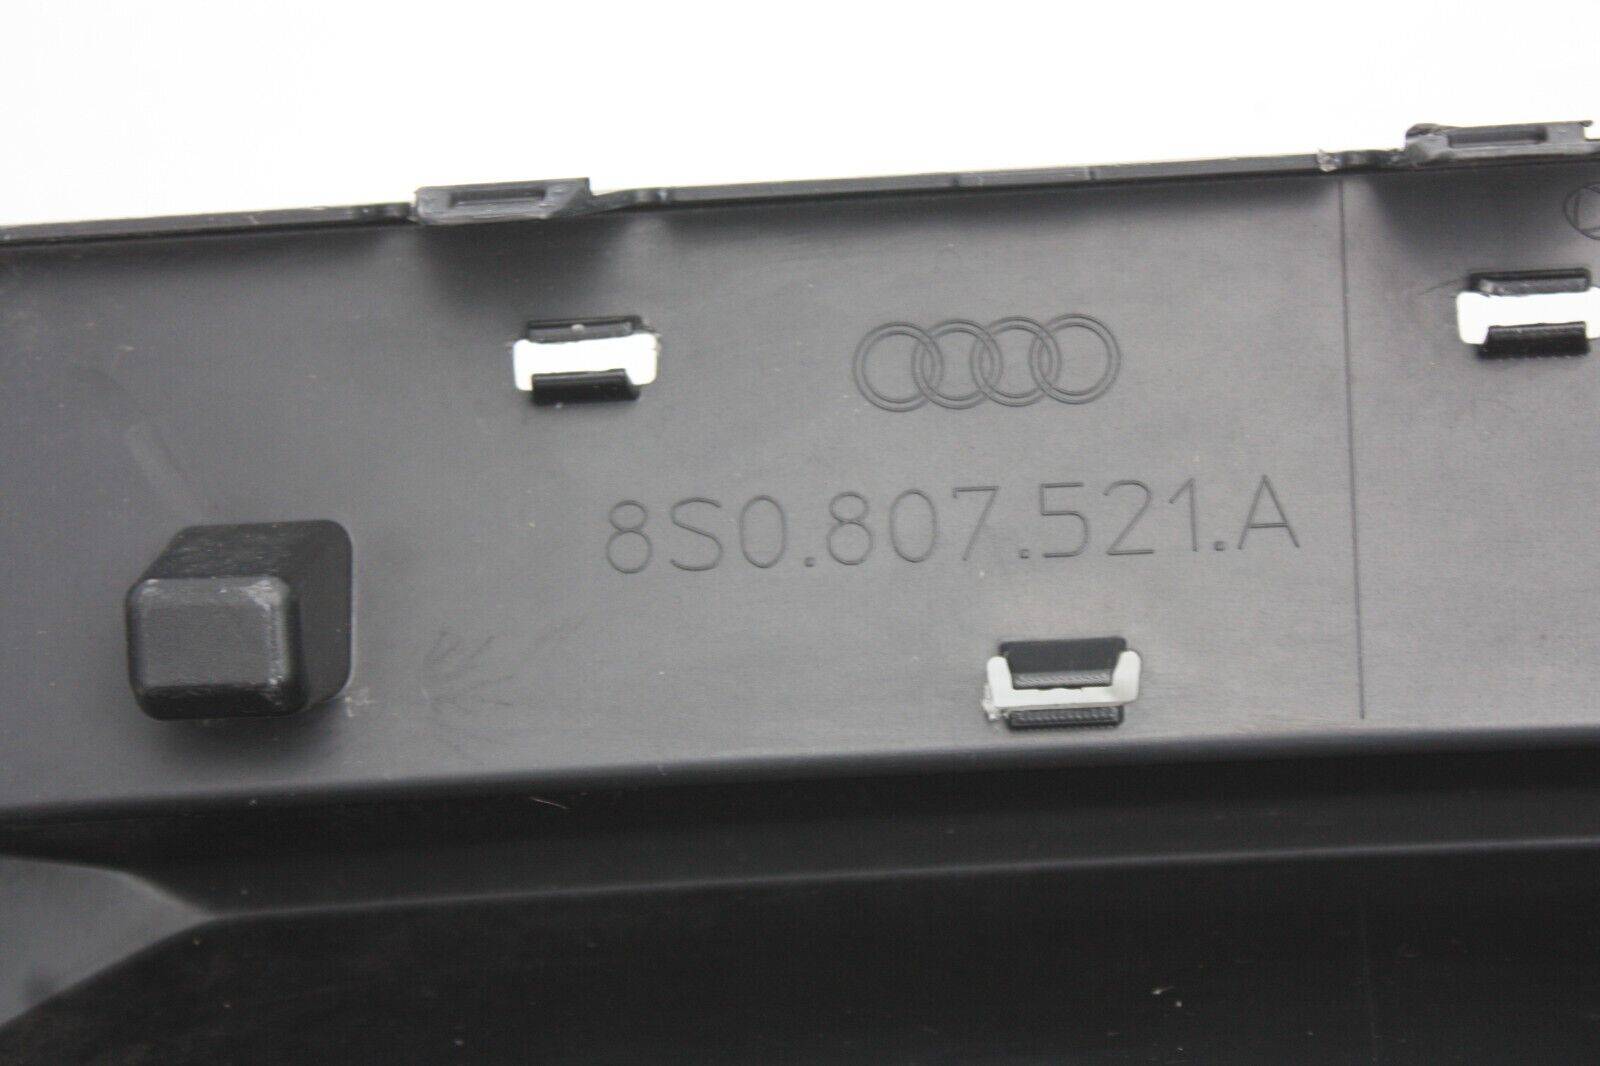 Audi-TT-S-Line-Rear-Bumper-Diffuser-2014-TO-2018-8S0807521A-Genuine-175659178030-9